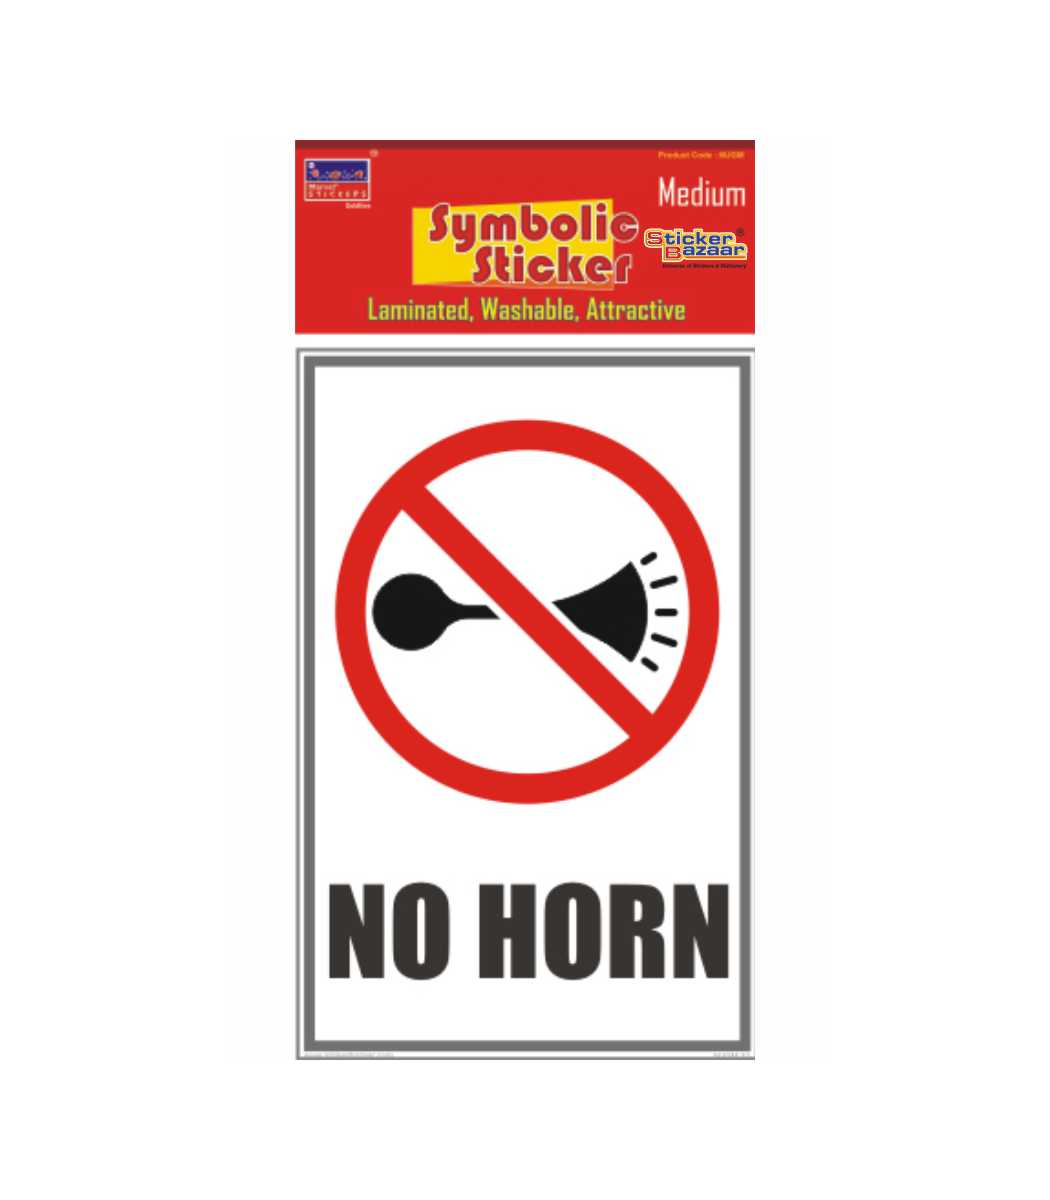 No Horn Medium Symbolic Sticker